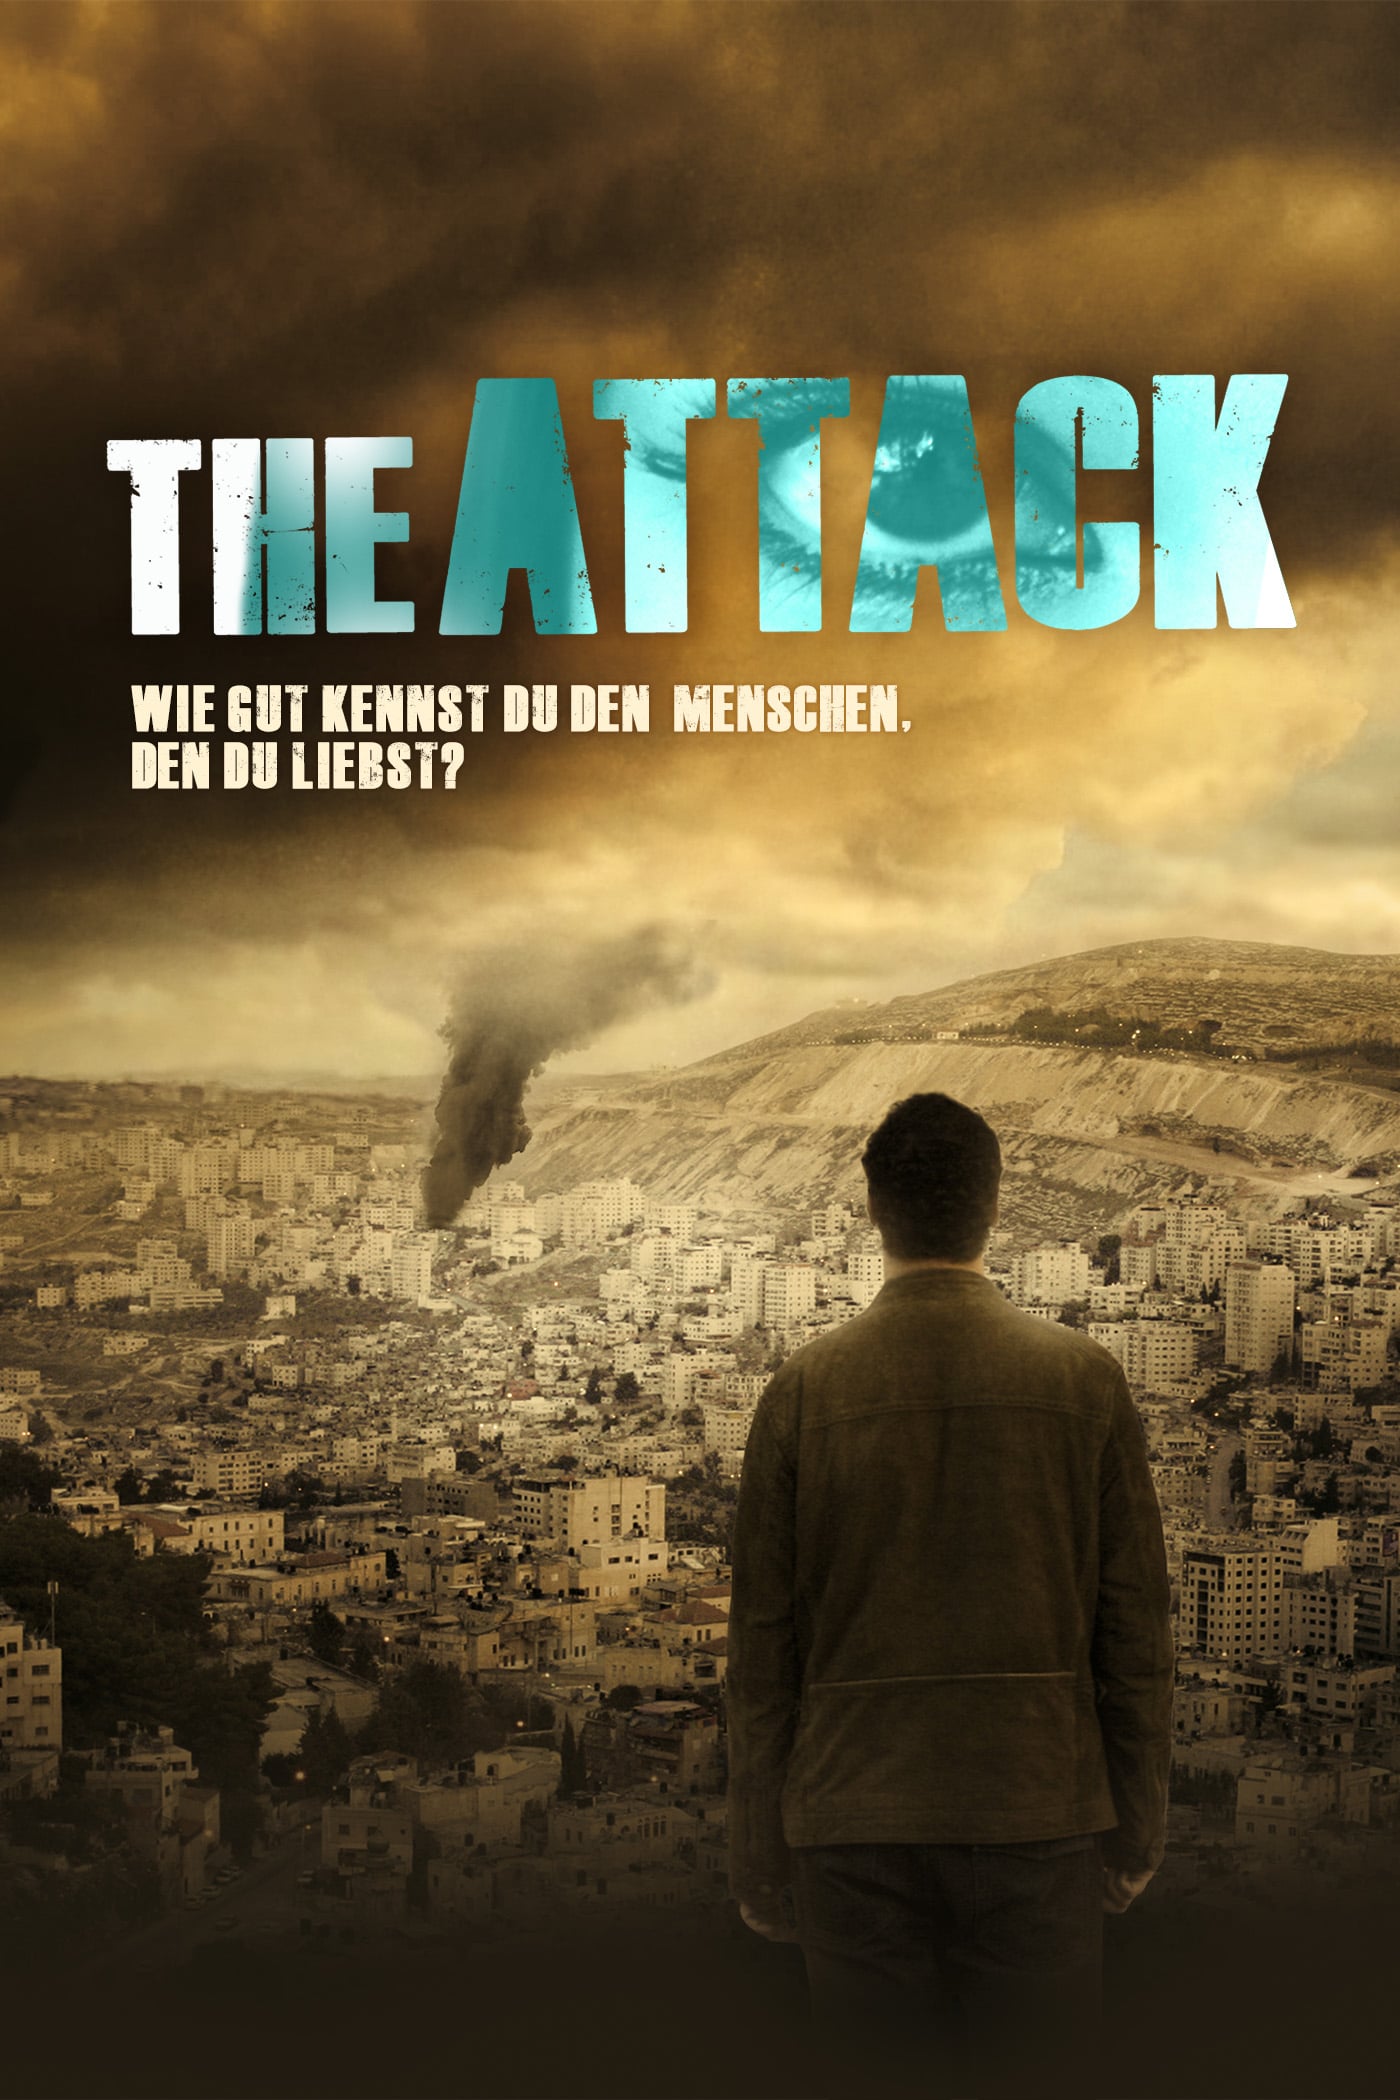 Plakat von "The Attack"